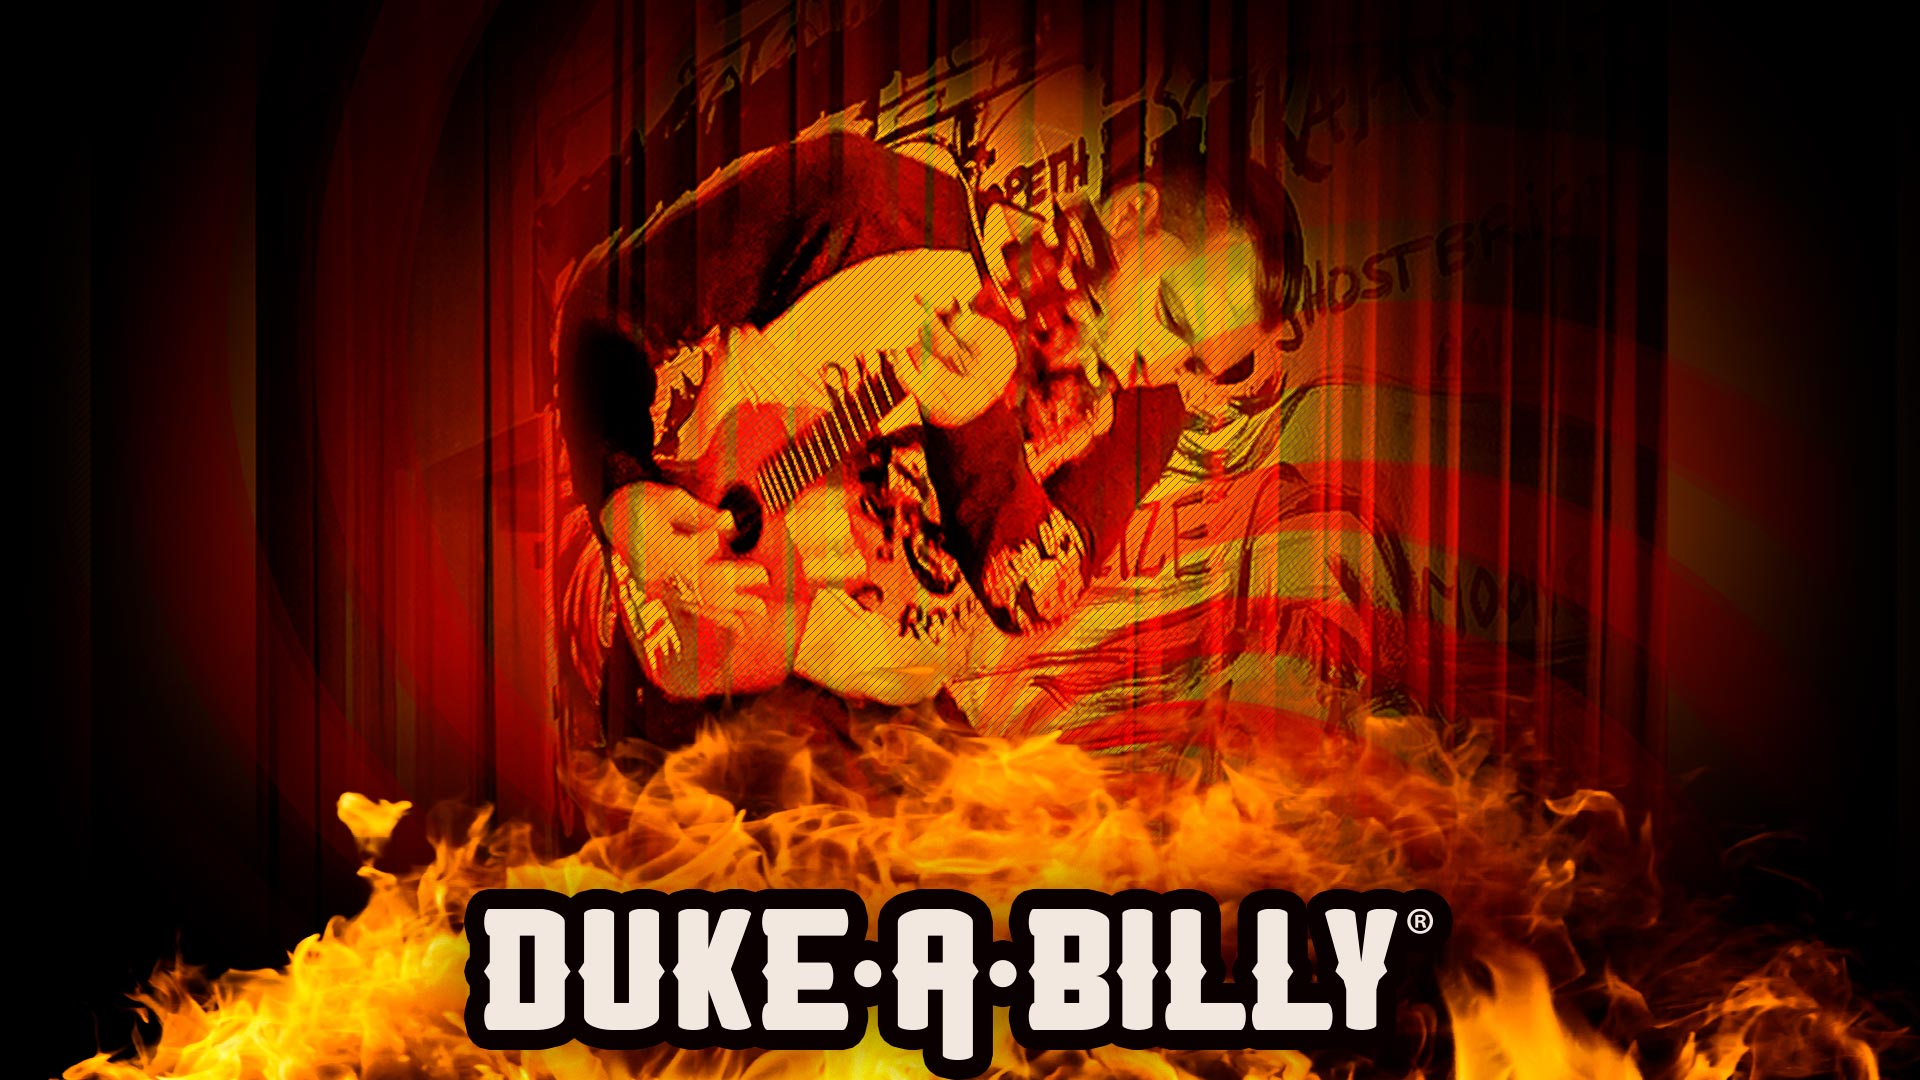 DUKE-A-BILLY Fire Race